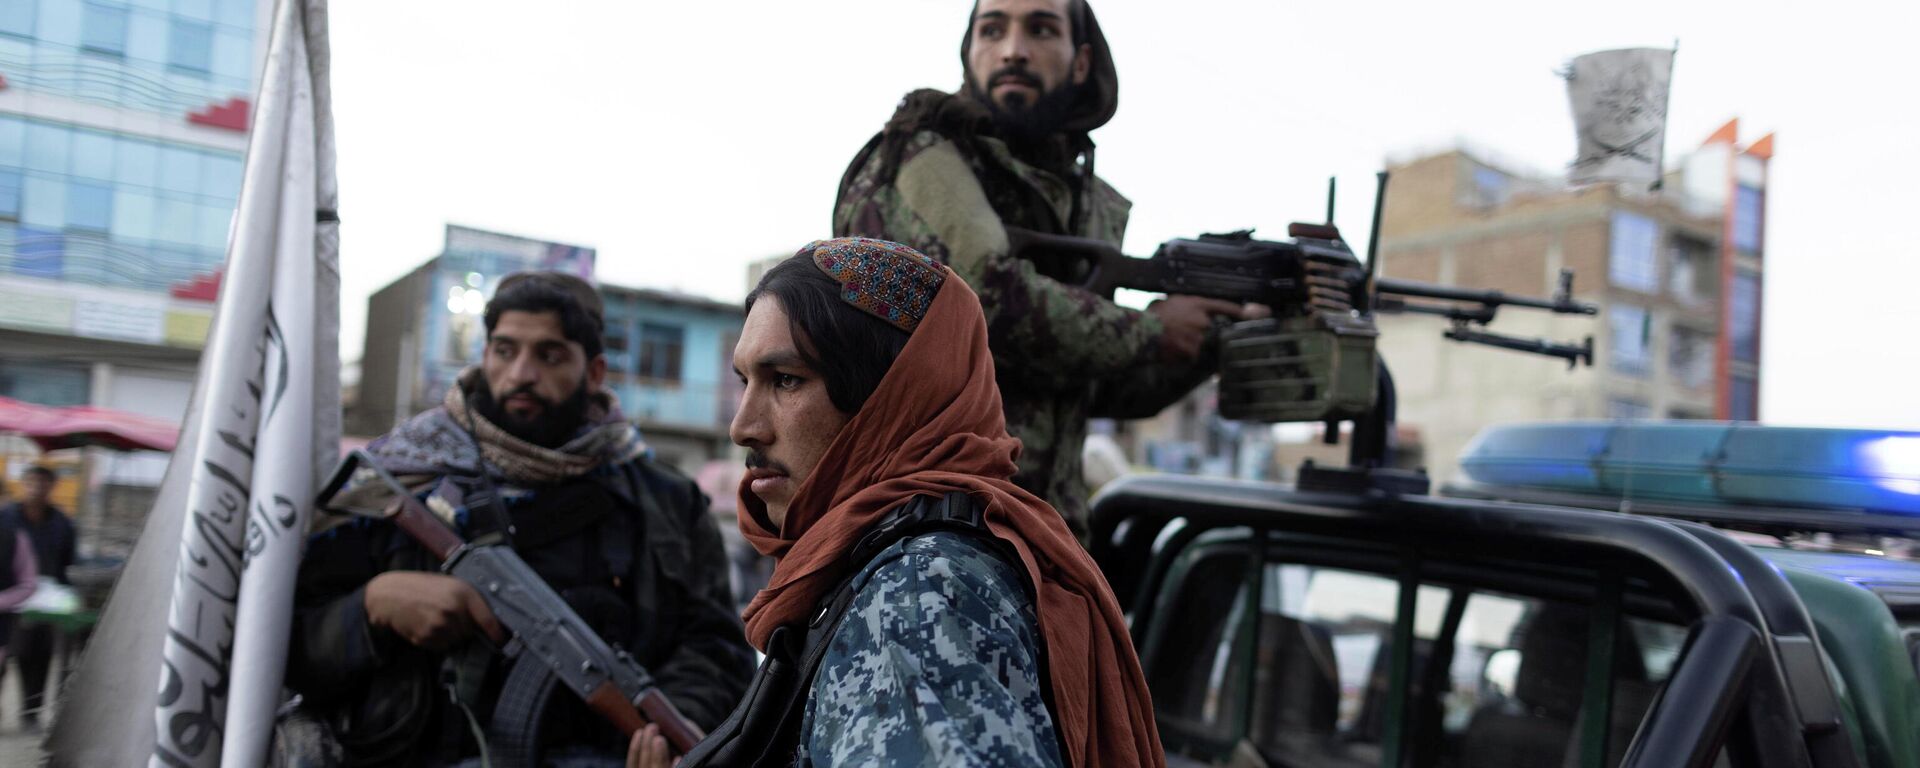 Talibanes vigilan la seguridad en Kabul, Afganistán - Sputnik Mundo, 1920, 06.11.2021